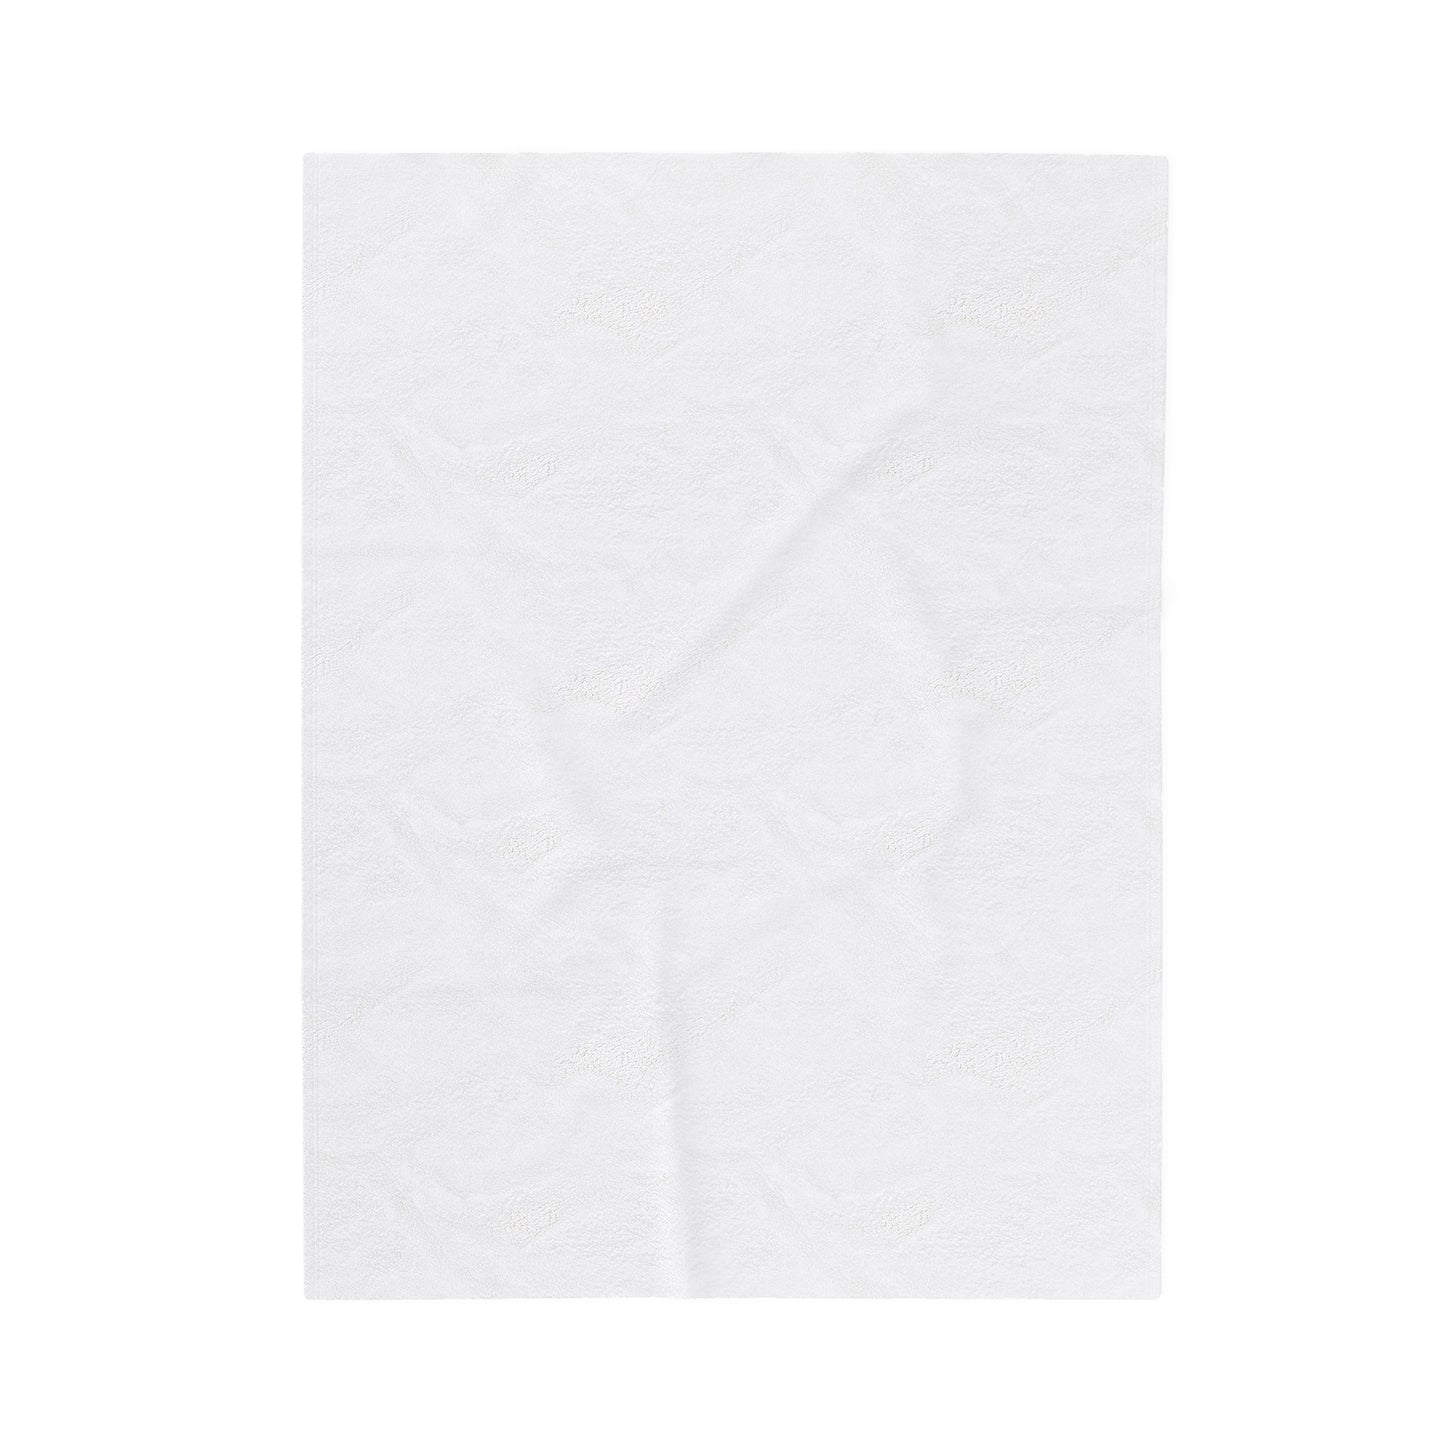 ABSTRACT SHAPES 101.1 - Velveteen Plush Blanket